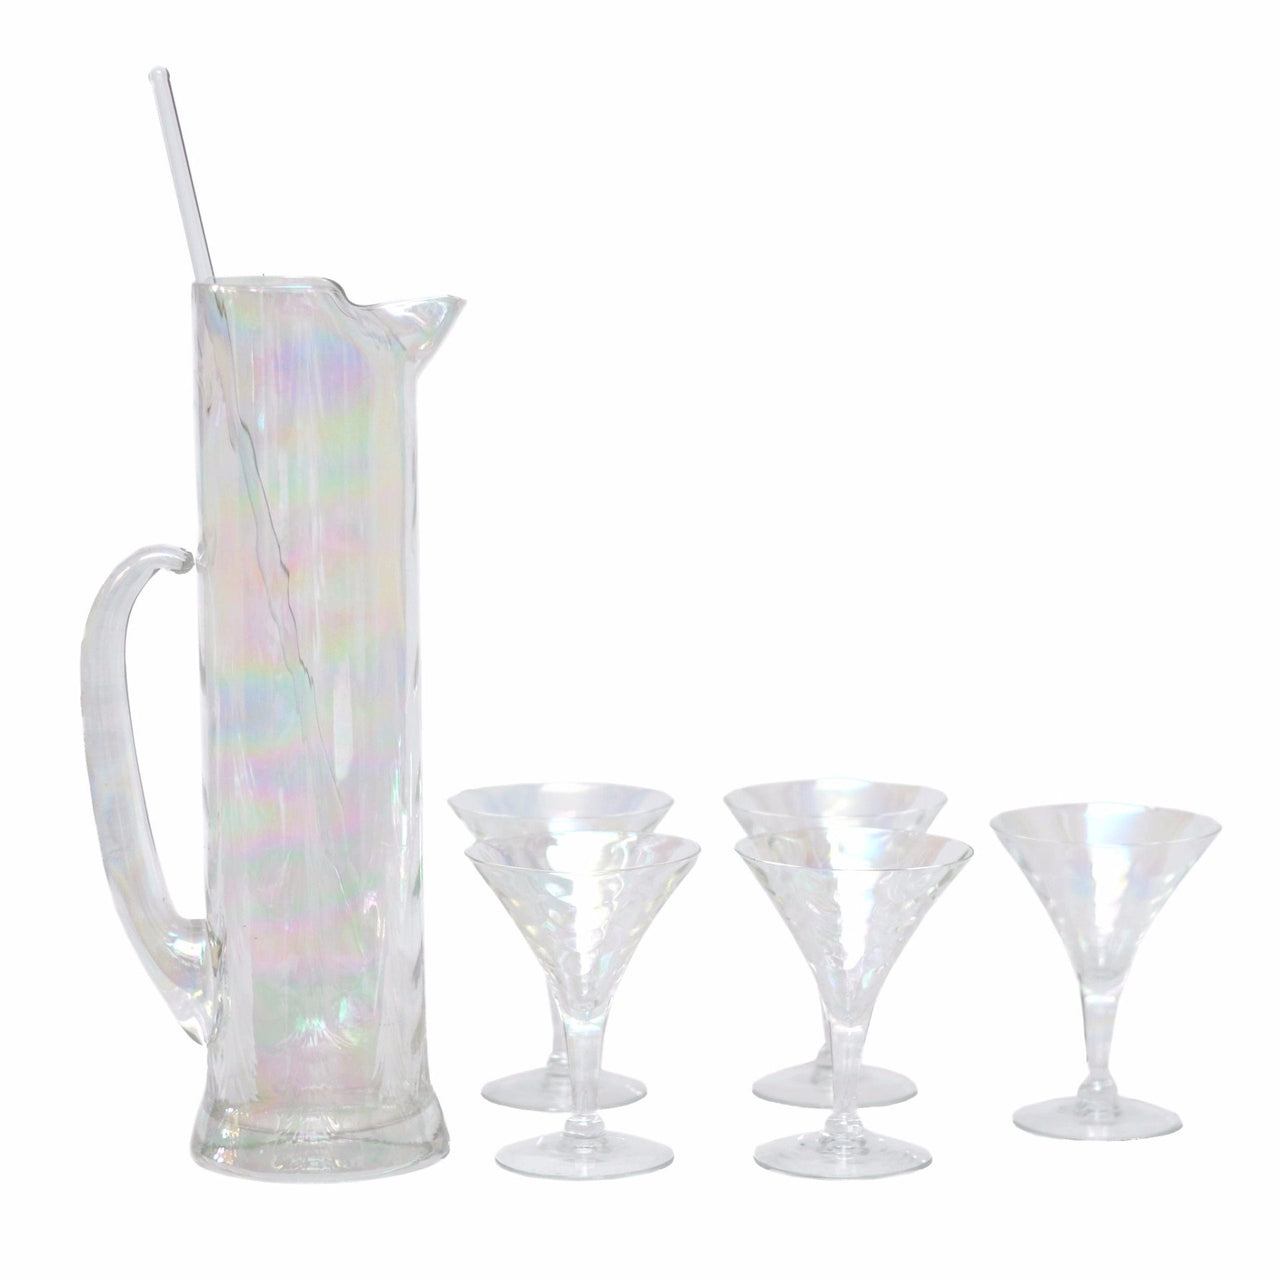 Vintage Glass Cocktail Pitcher & Stirrer – Dovetail